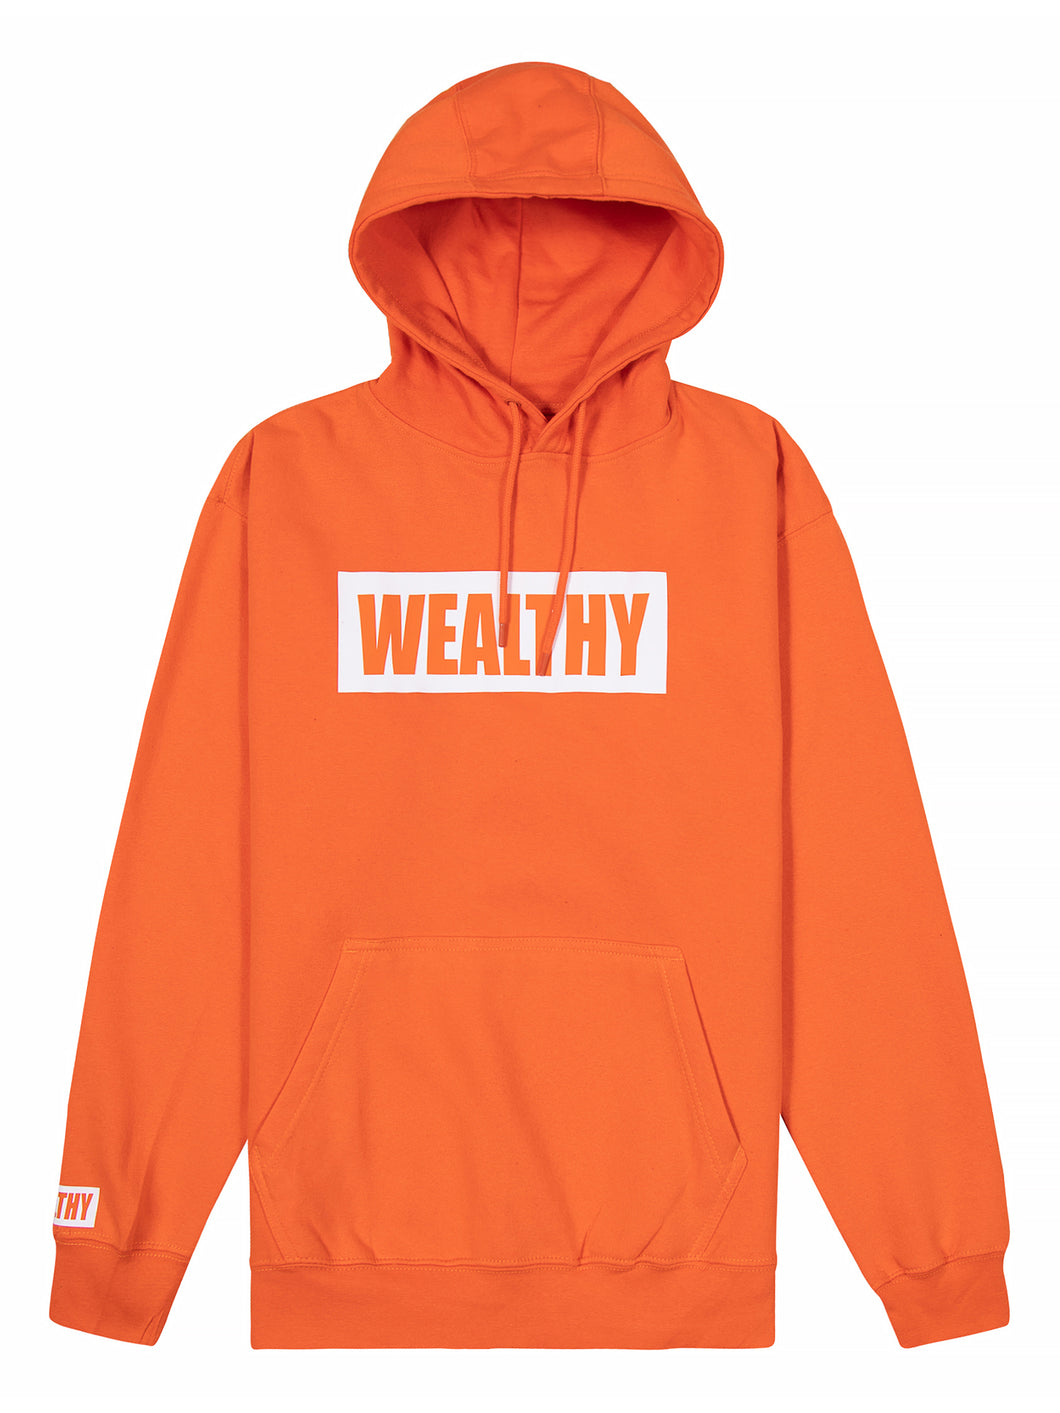 Wealthy Hoodie (Orange/White)